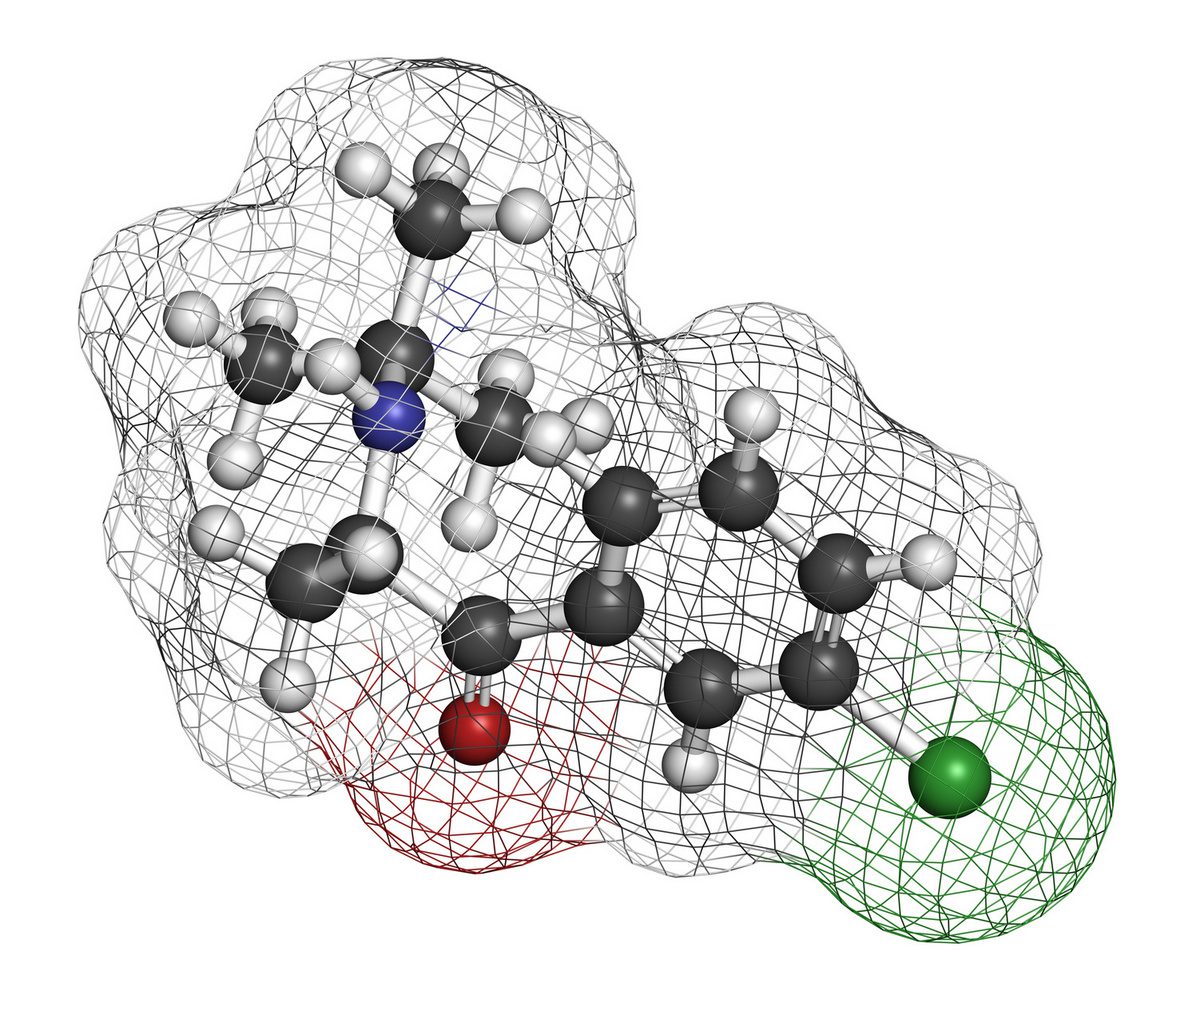 Molekülstruktur von Bupropion - Gute Wirkung und unerwünschte Nebenwirkungen gehen Hand in Hand, wie Erfahrungen zeigen... (© molekuul.be / stock.adobe.com)